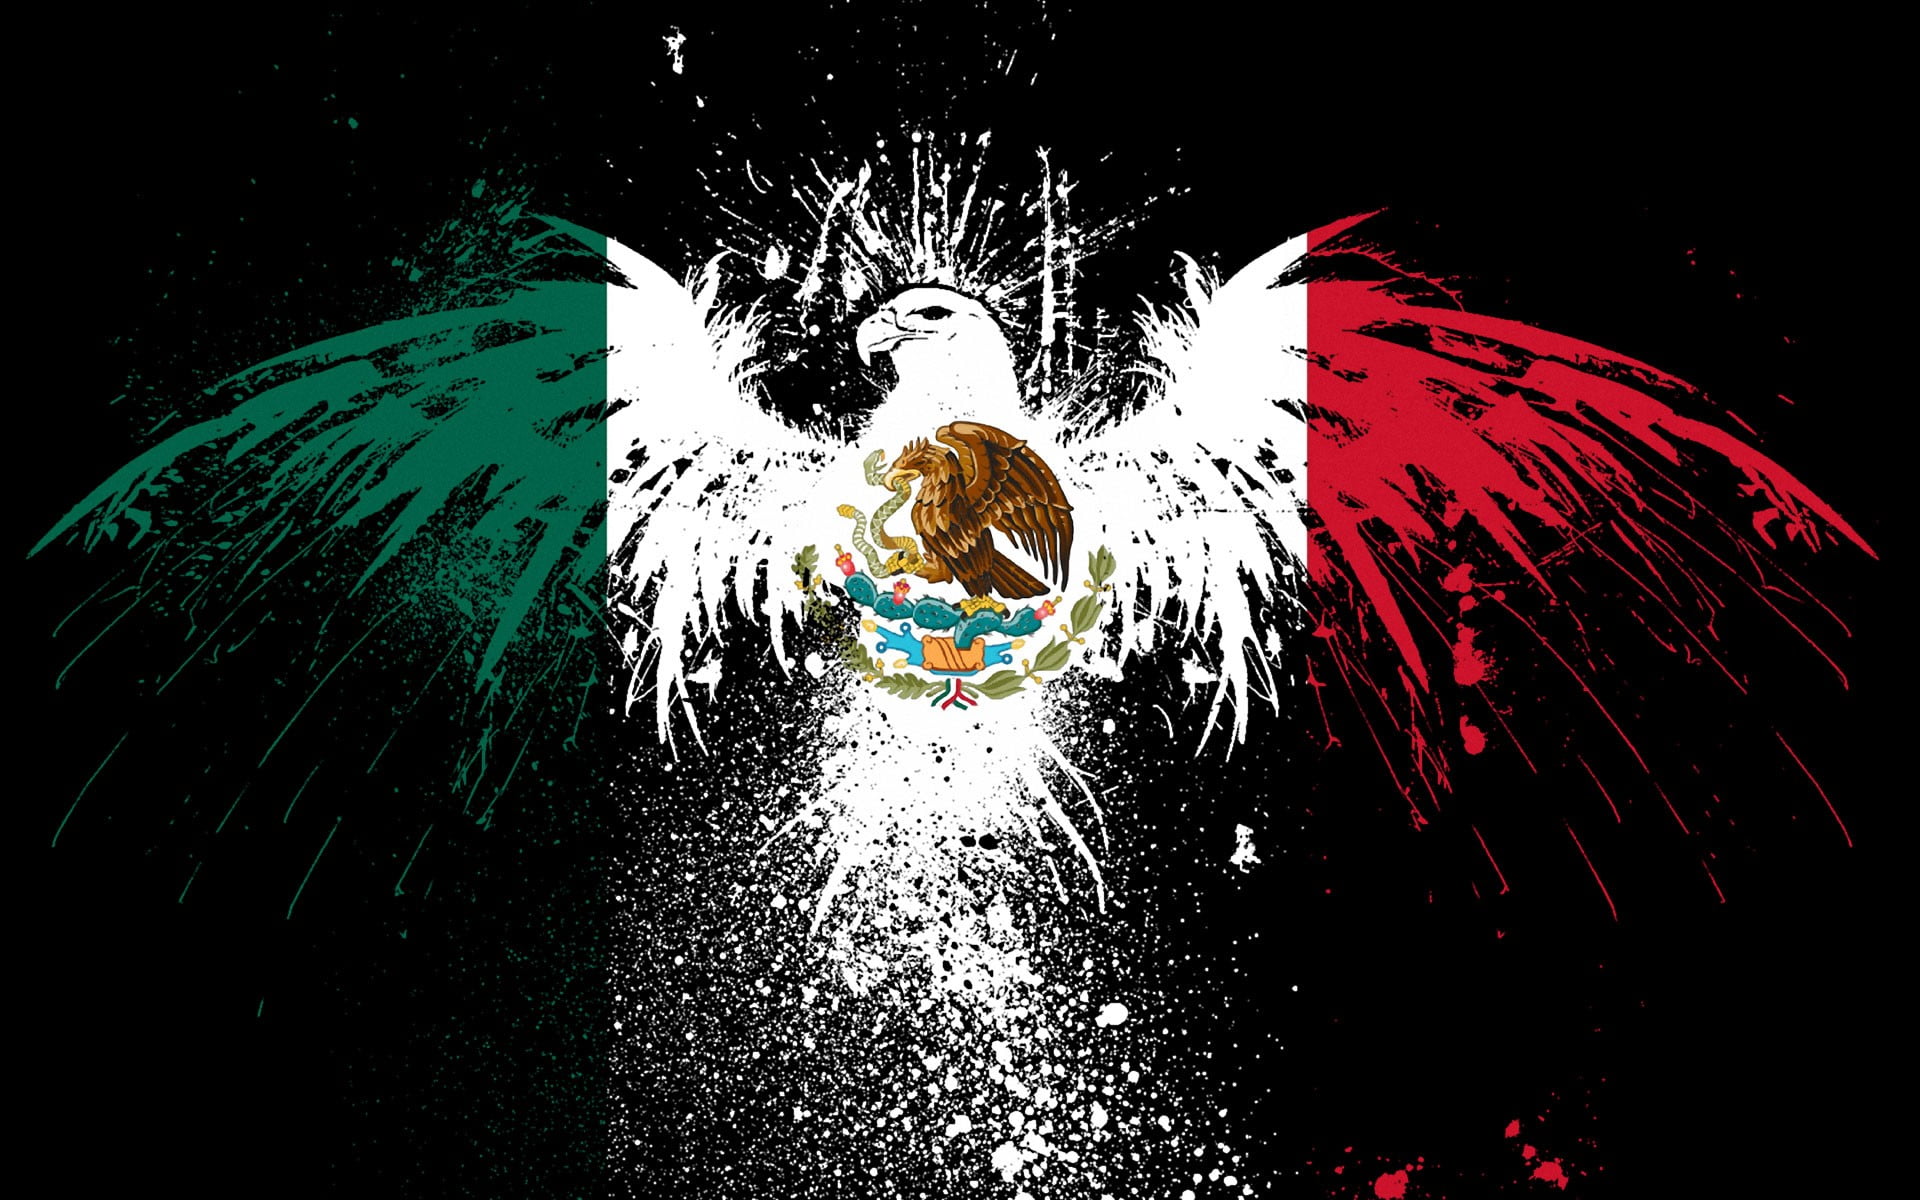 Quốc kỳ Mexico: Với những đường tuyệt đẹp màu xanh, trắng, đỏ thiêng liêng, quốc kỳ Mexico là biểu tượng của sự tự do và tình yêu đất nước. Hãy xem các hình ảnh liên quan để ngắm nhìn vẻ đẹp của quốc kỳ này.